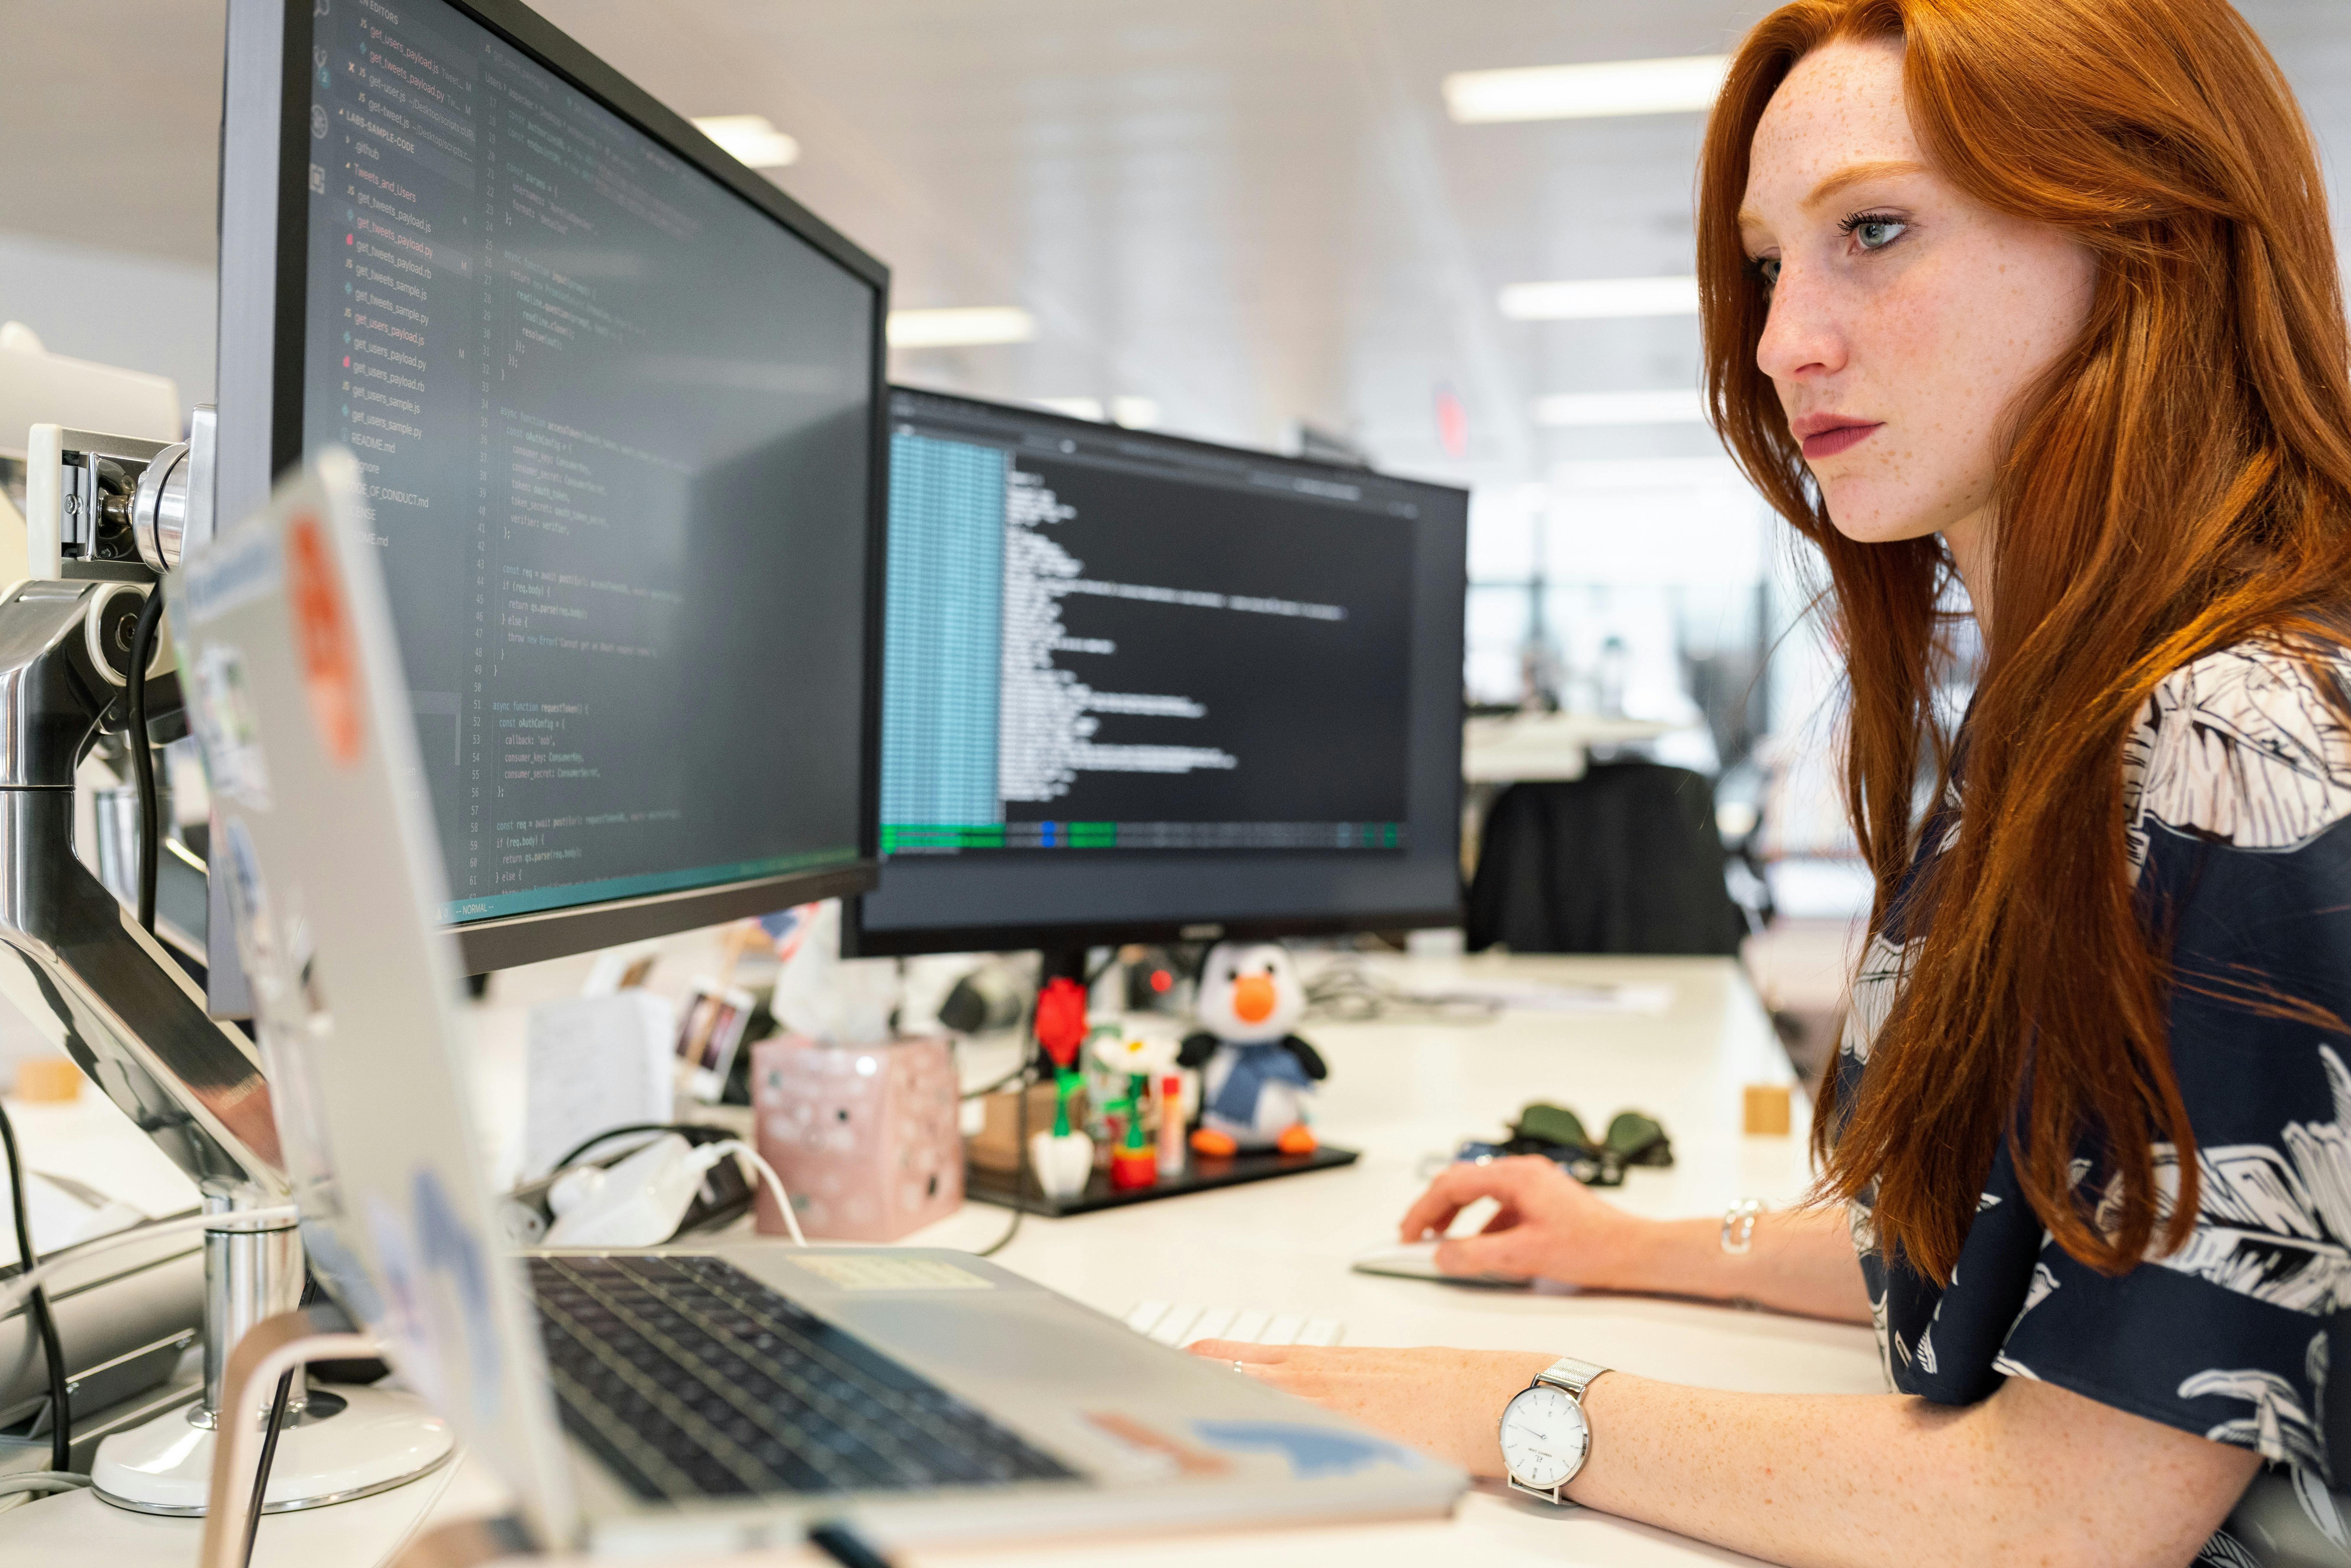 software developer focuses on her tasks